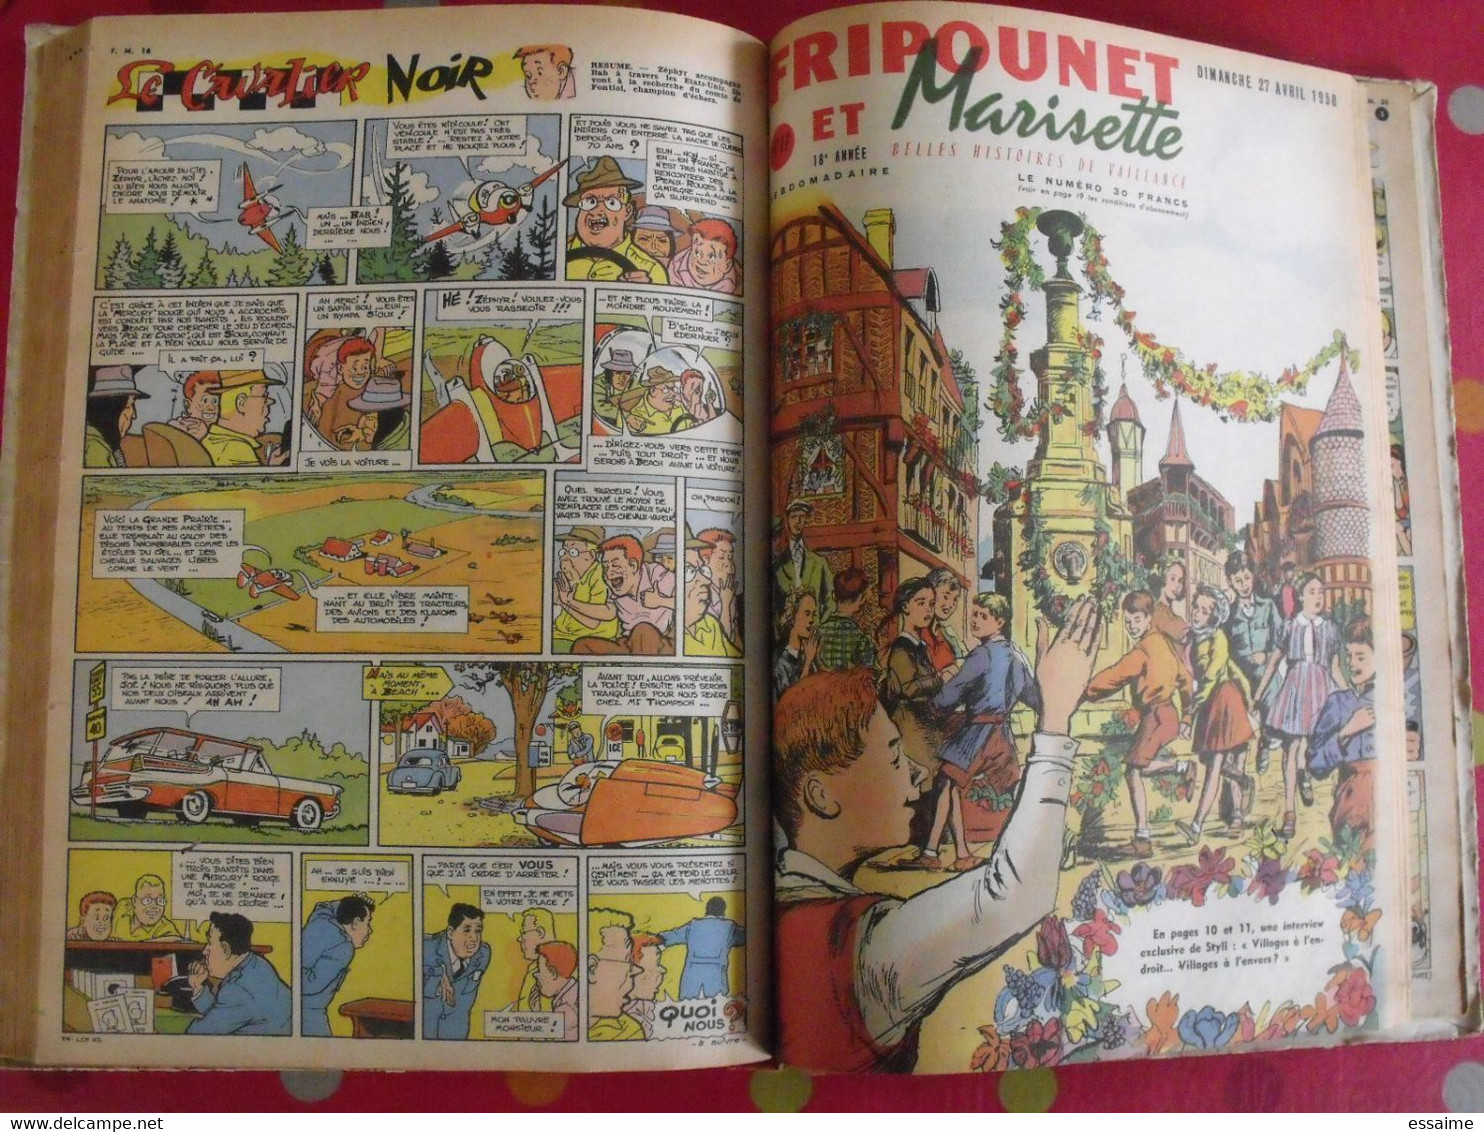 album recueil reliure Fripounet et Marisette n° 2 de 1958. erik brochard cuvillier bonnet